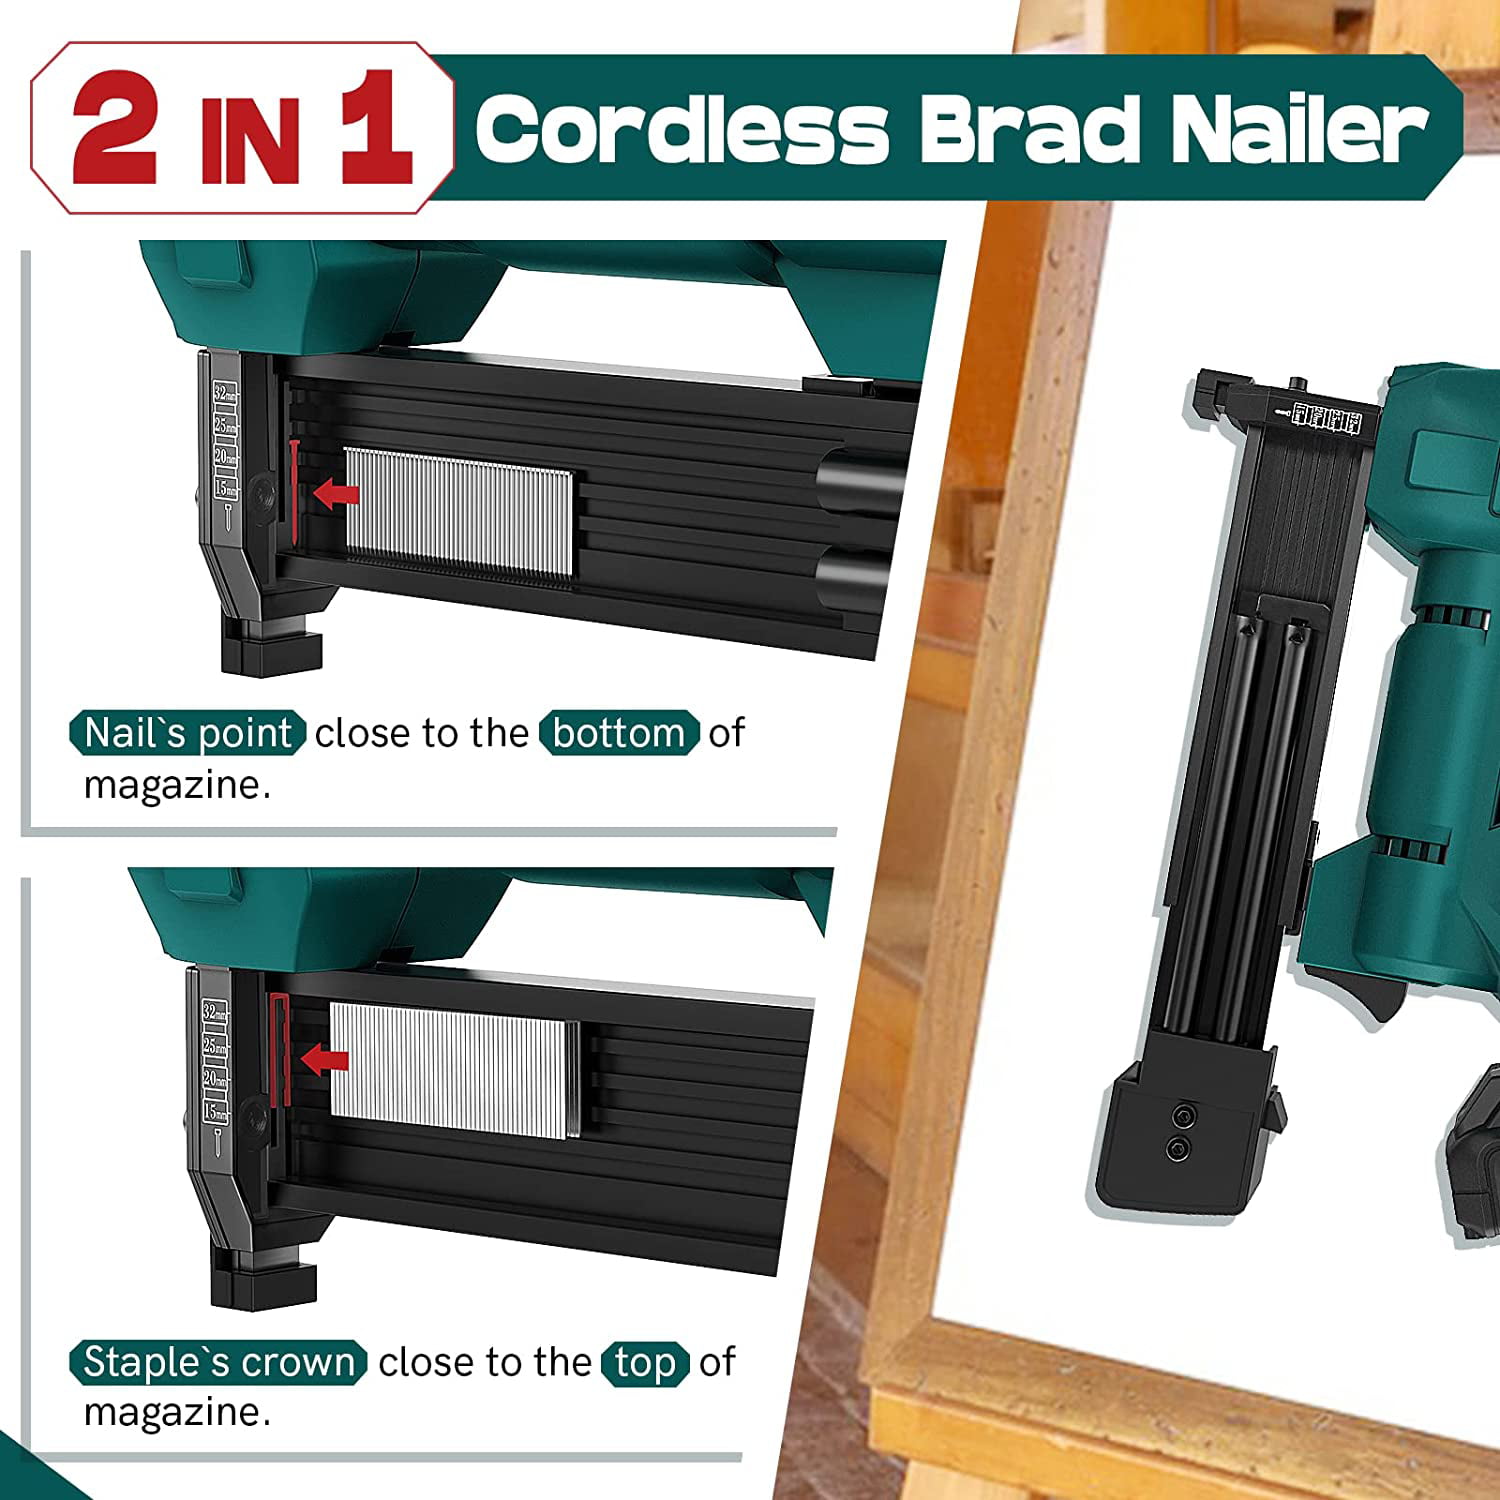 NEIKO 02651A Cordless Brad Nailer and Stapler